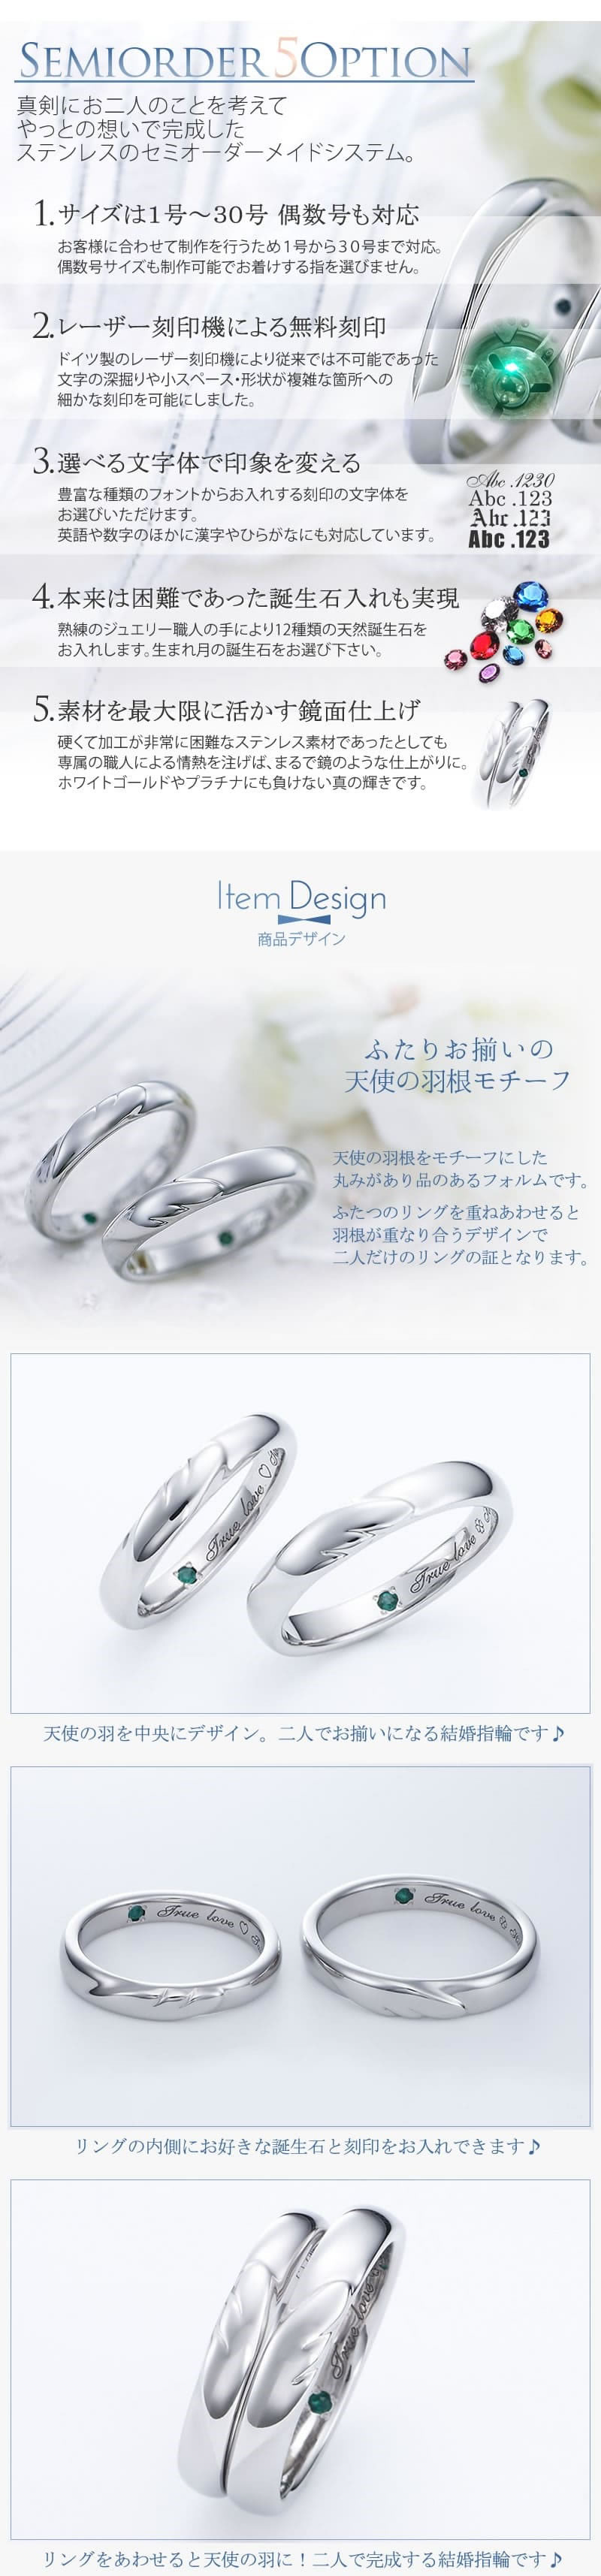 ステンレス 結婚指輪 101R-KS 商品画像